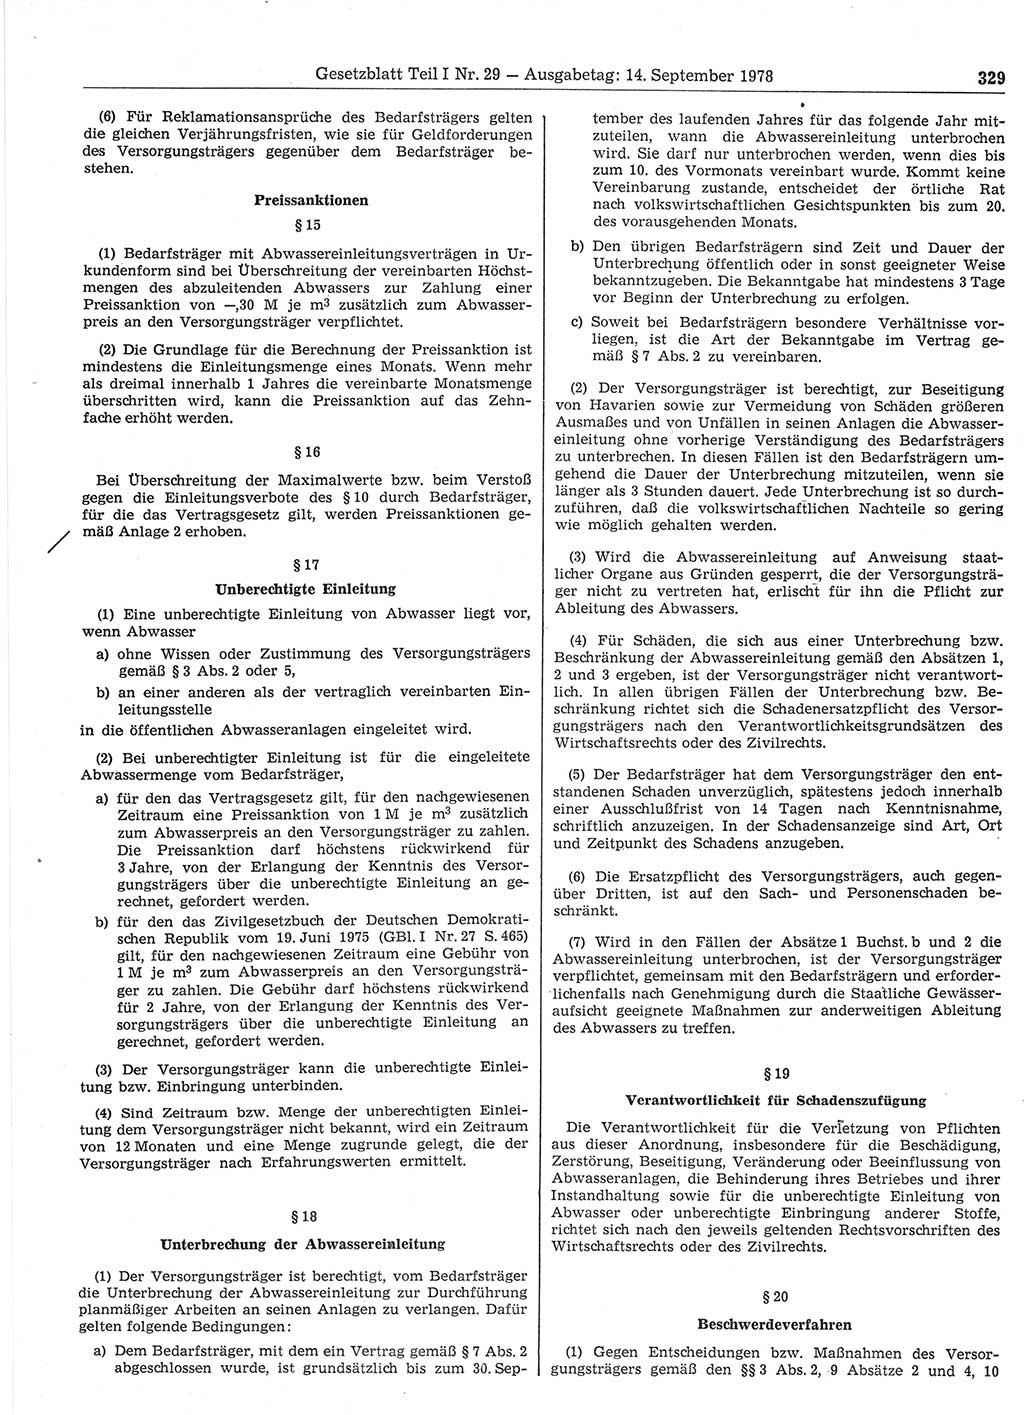 Gesetzblatt (GBl.) der Deutschen Demokratischen Republik (DDR) Teil Ⅰ 1978, Seite 329 (GBl. DDR Ⅰ 1978, S. 329)